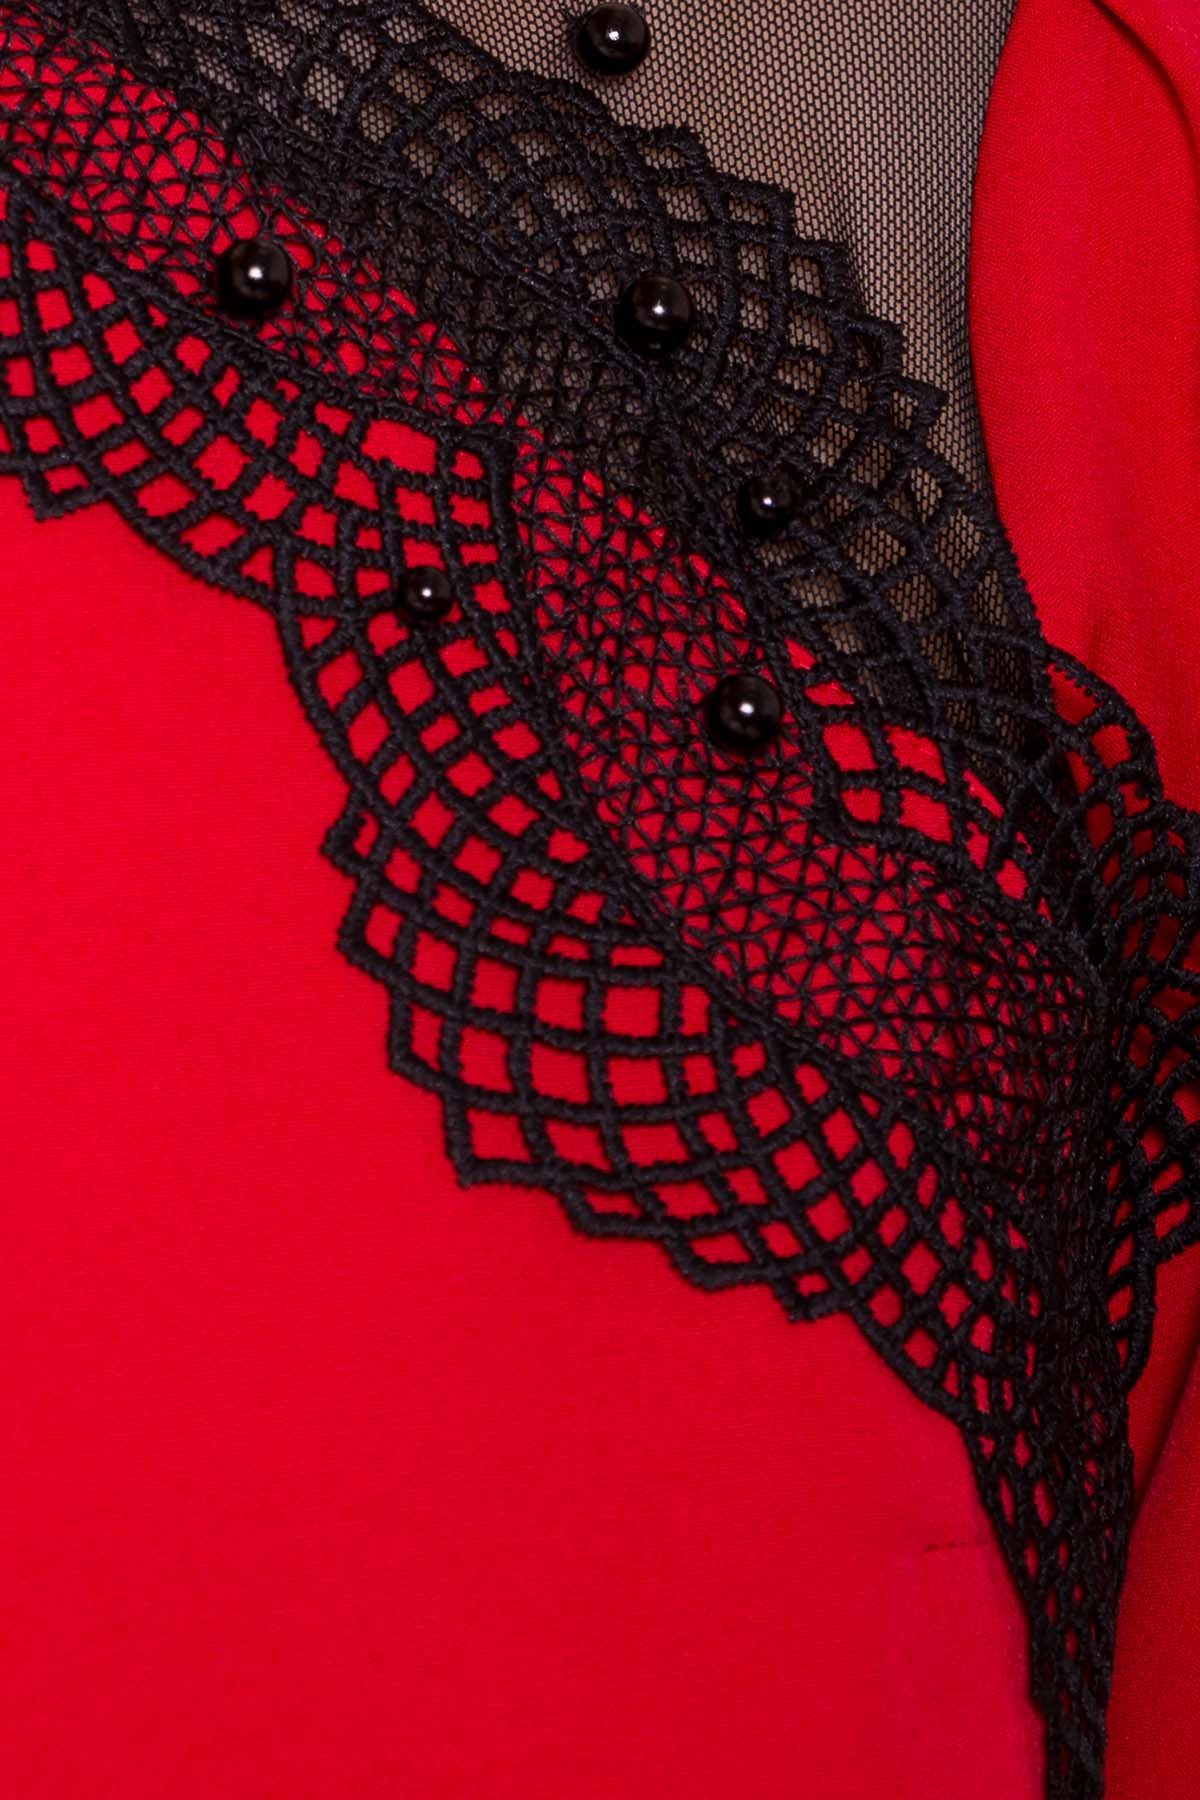 Платье с рукавом фонарик Алексис 6650 АРТ. 41757 Цвет: Красный - фото 4, интернет магазин tm-modus.ru